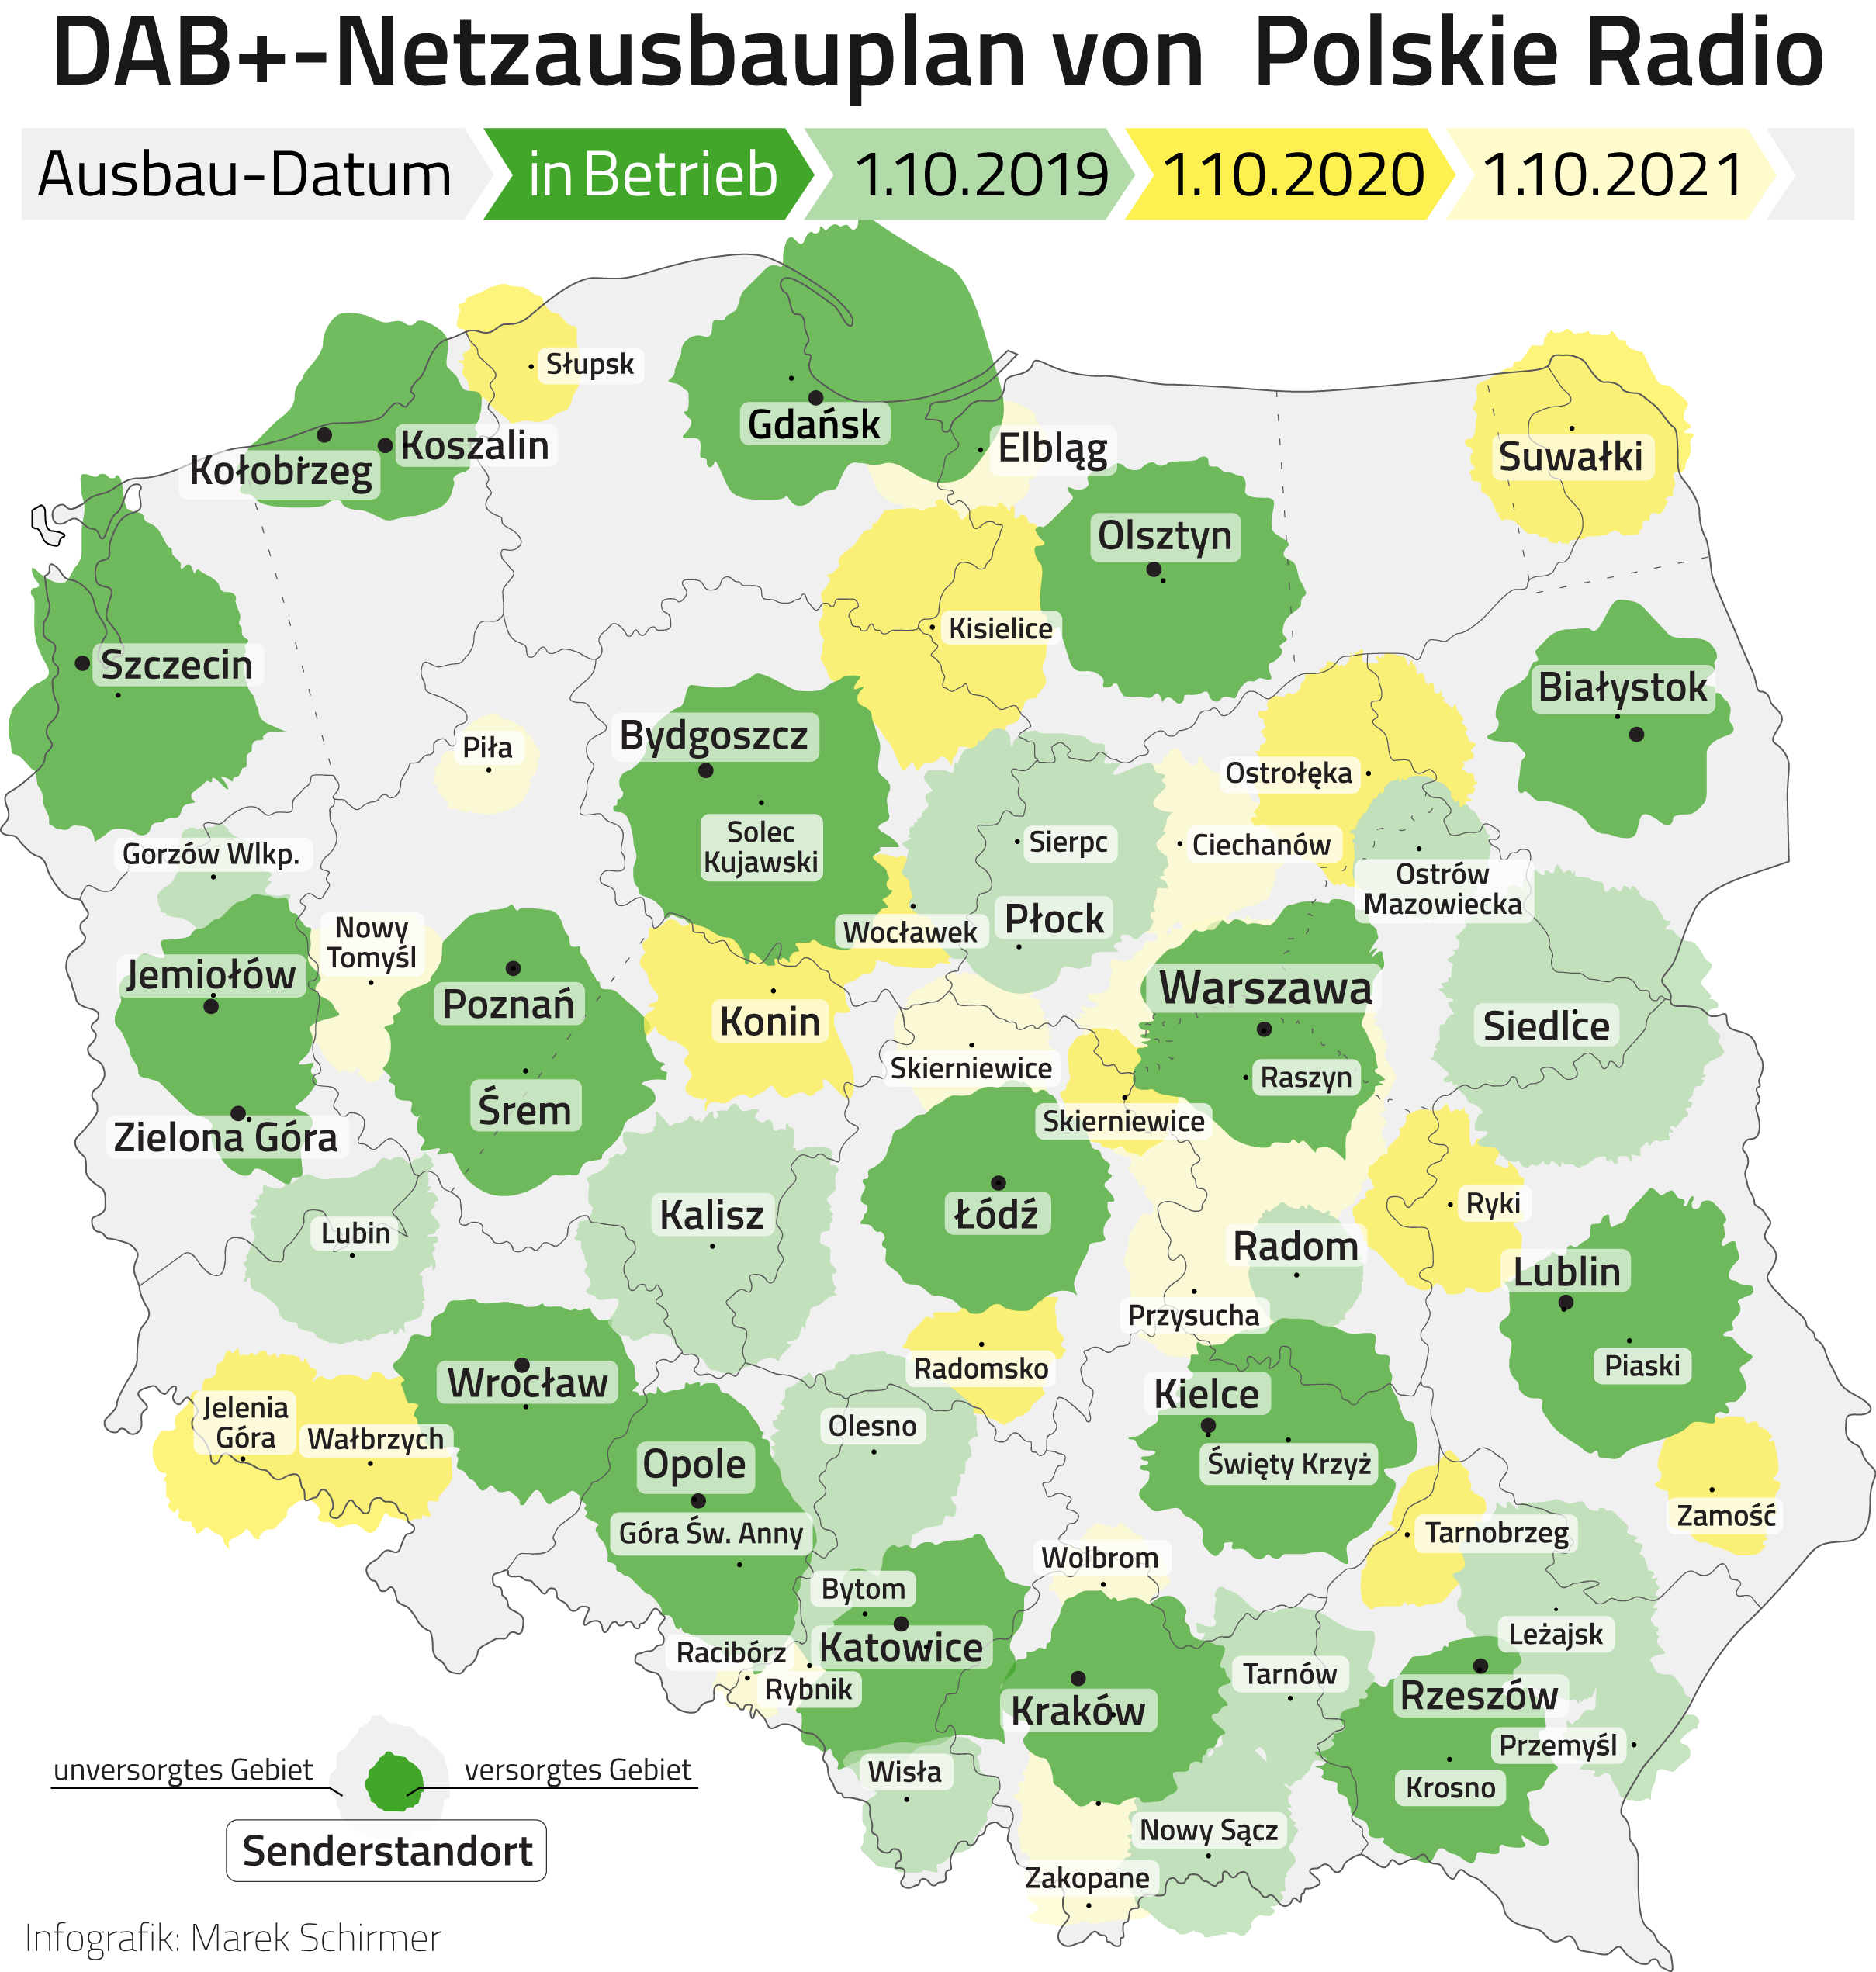 DAB+ Netzausbauplan von Polskie Radio